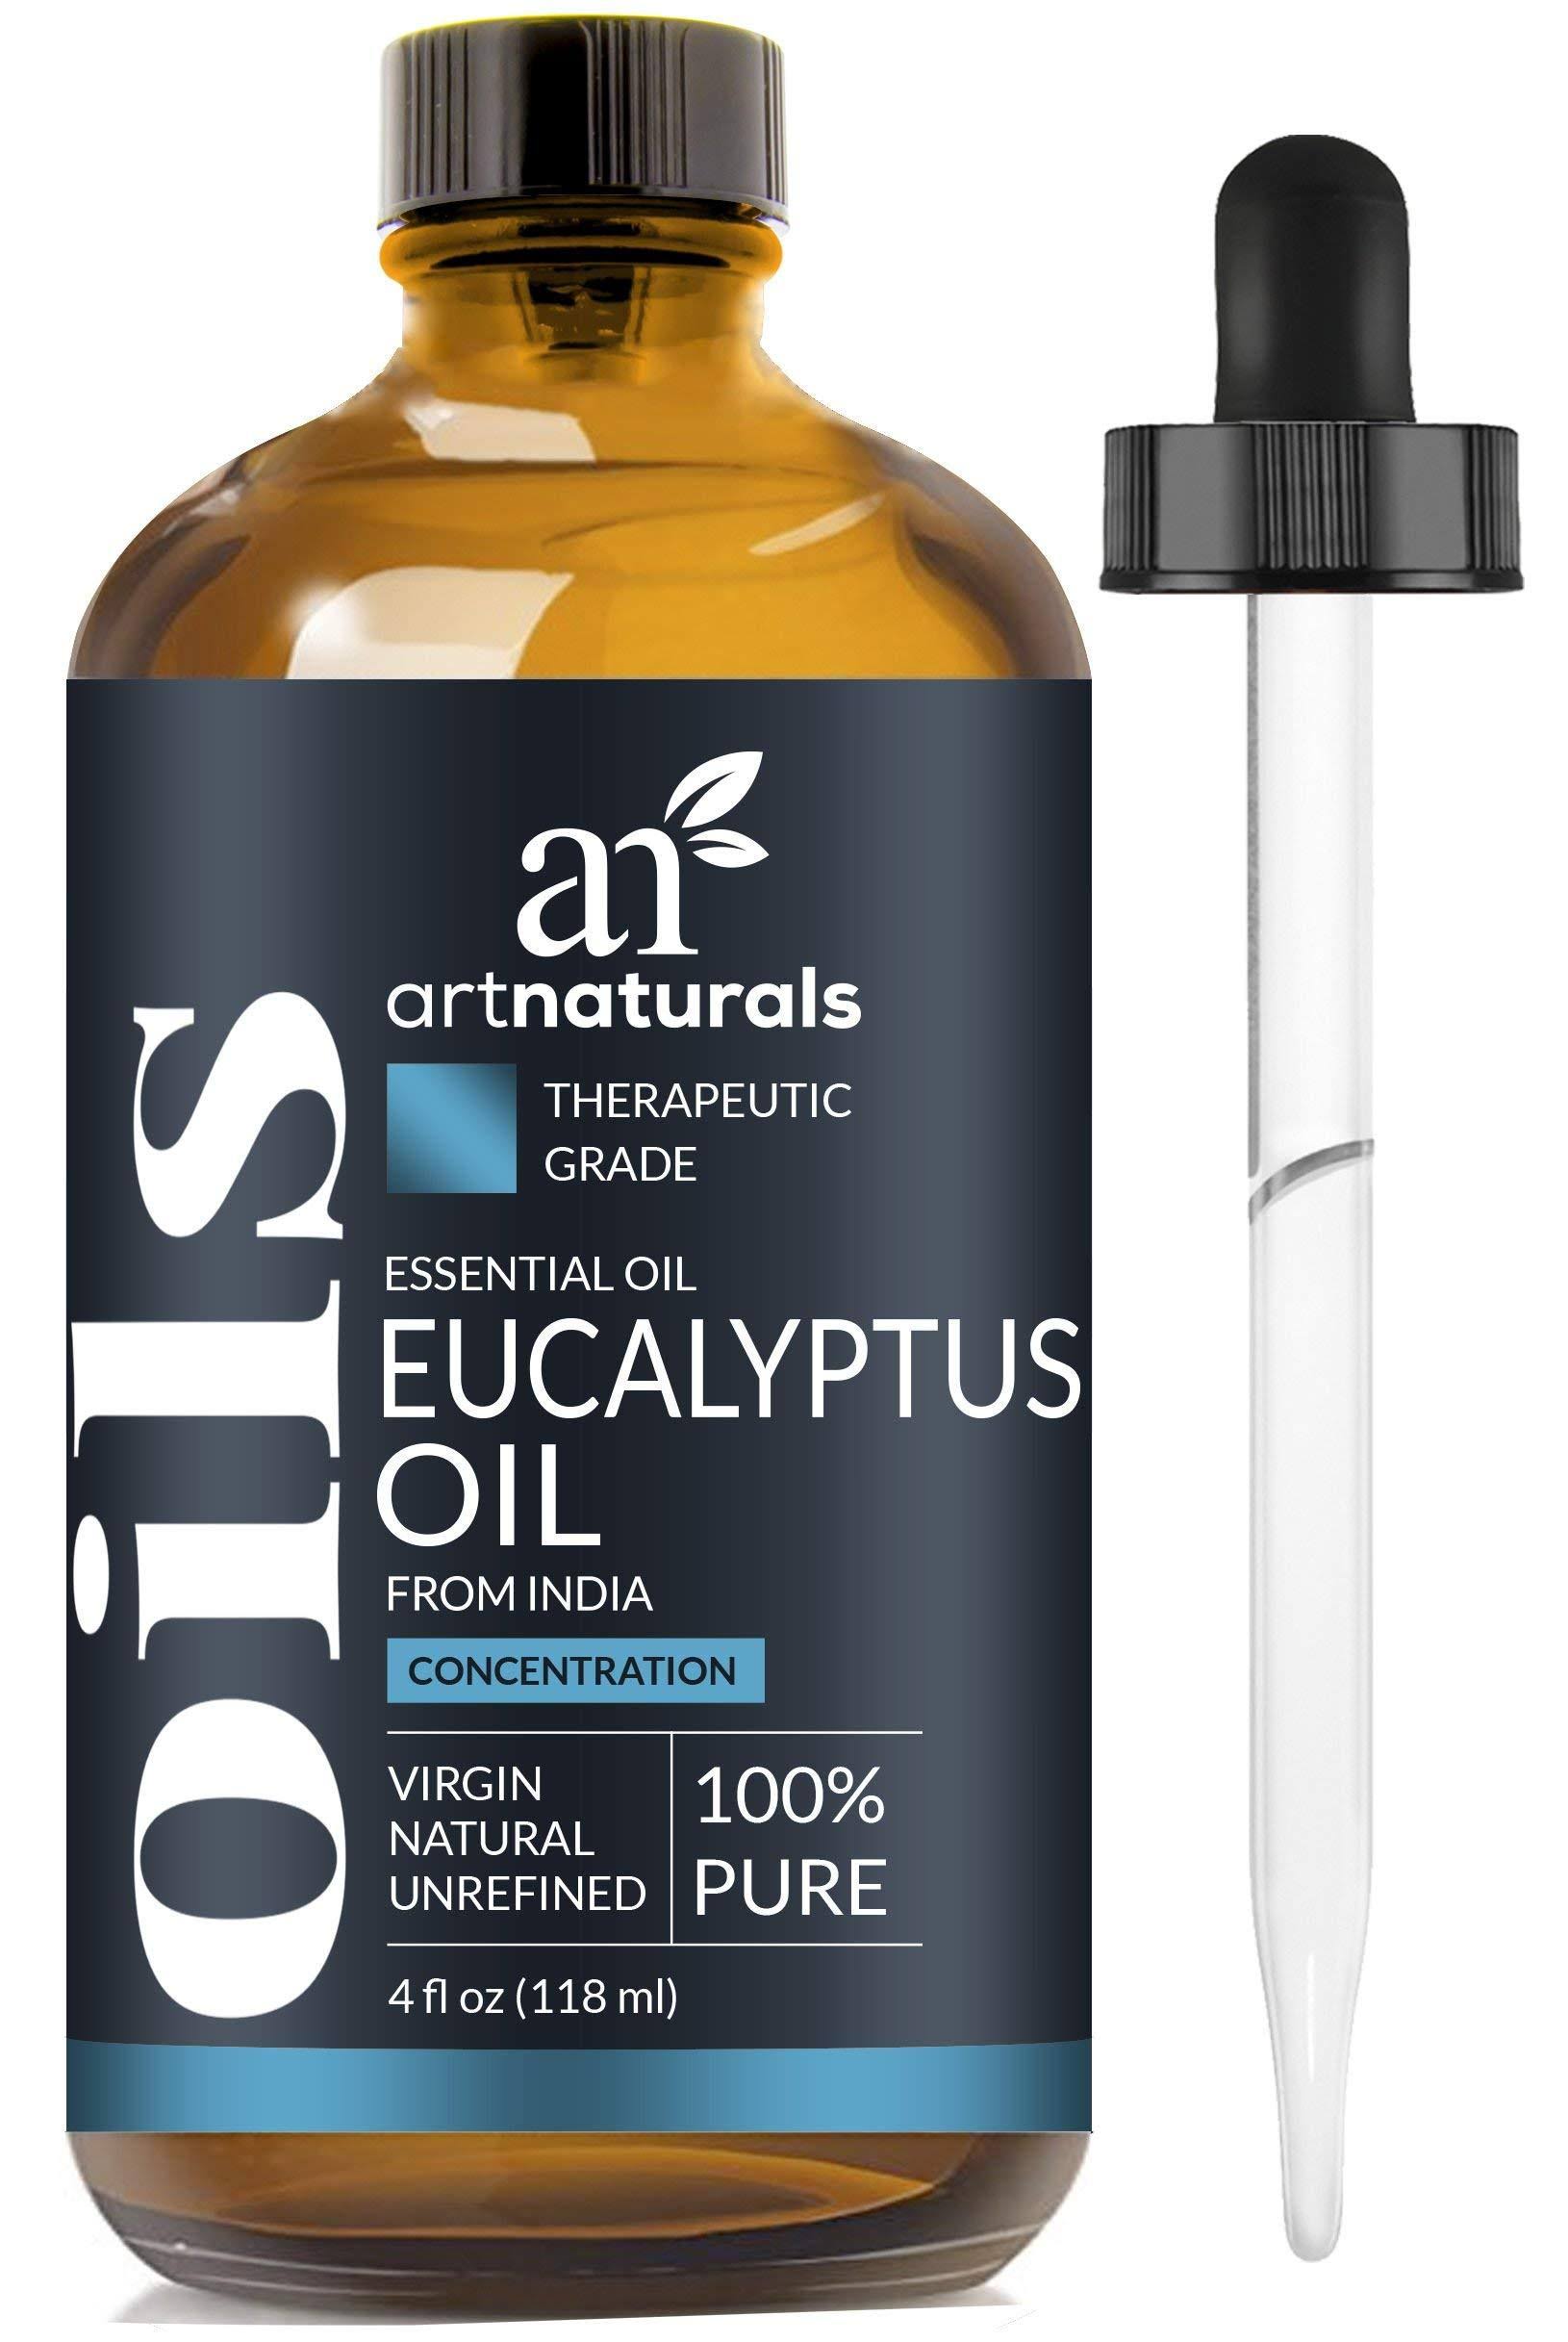 Artnaturals Eucalyptus Essential Oil - 4 fl oz